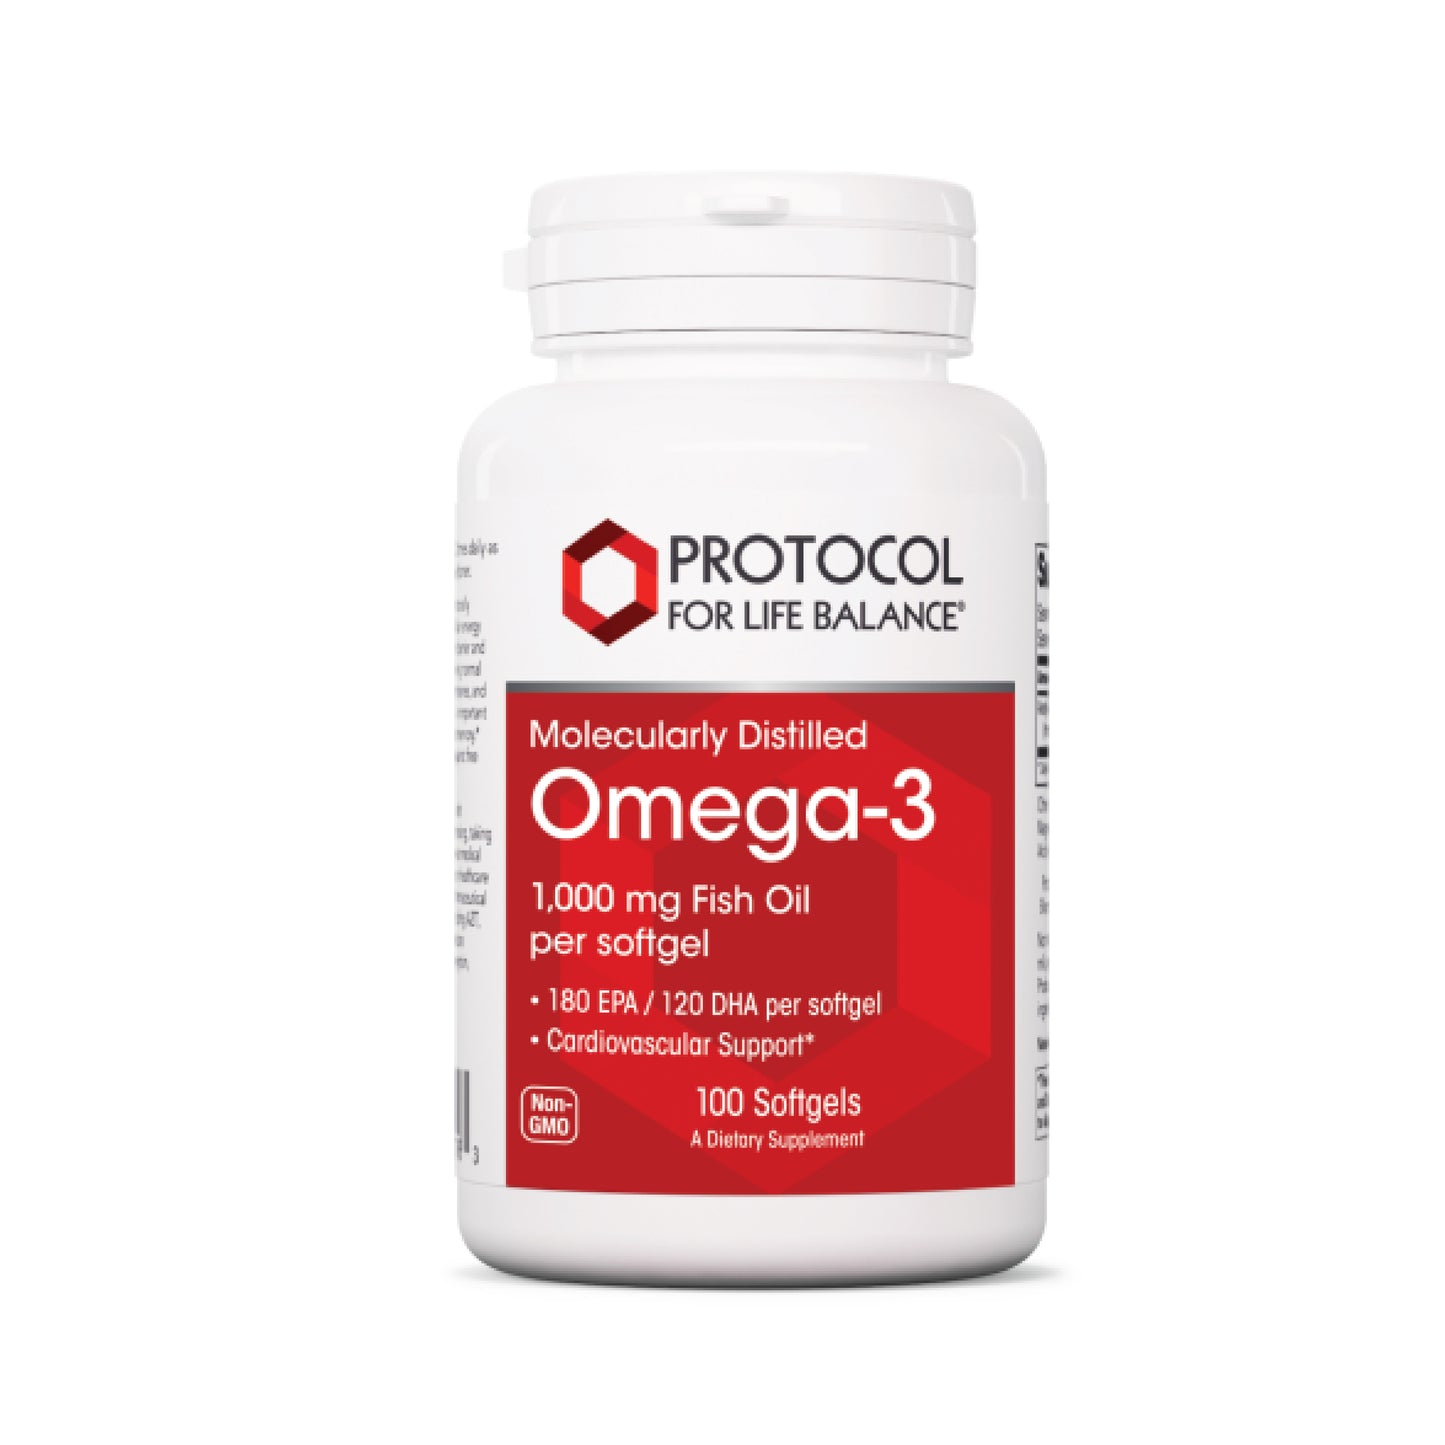 Protocol for Life Balance, Omega-3 1,000 mg Fish Oil, 100 Softgels